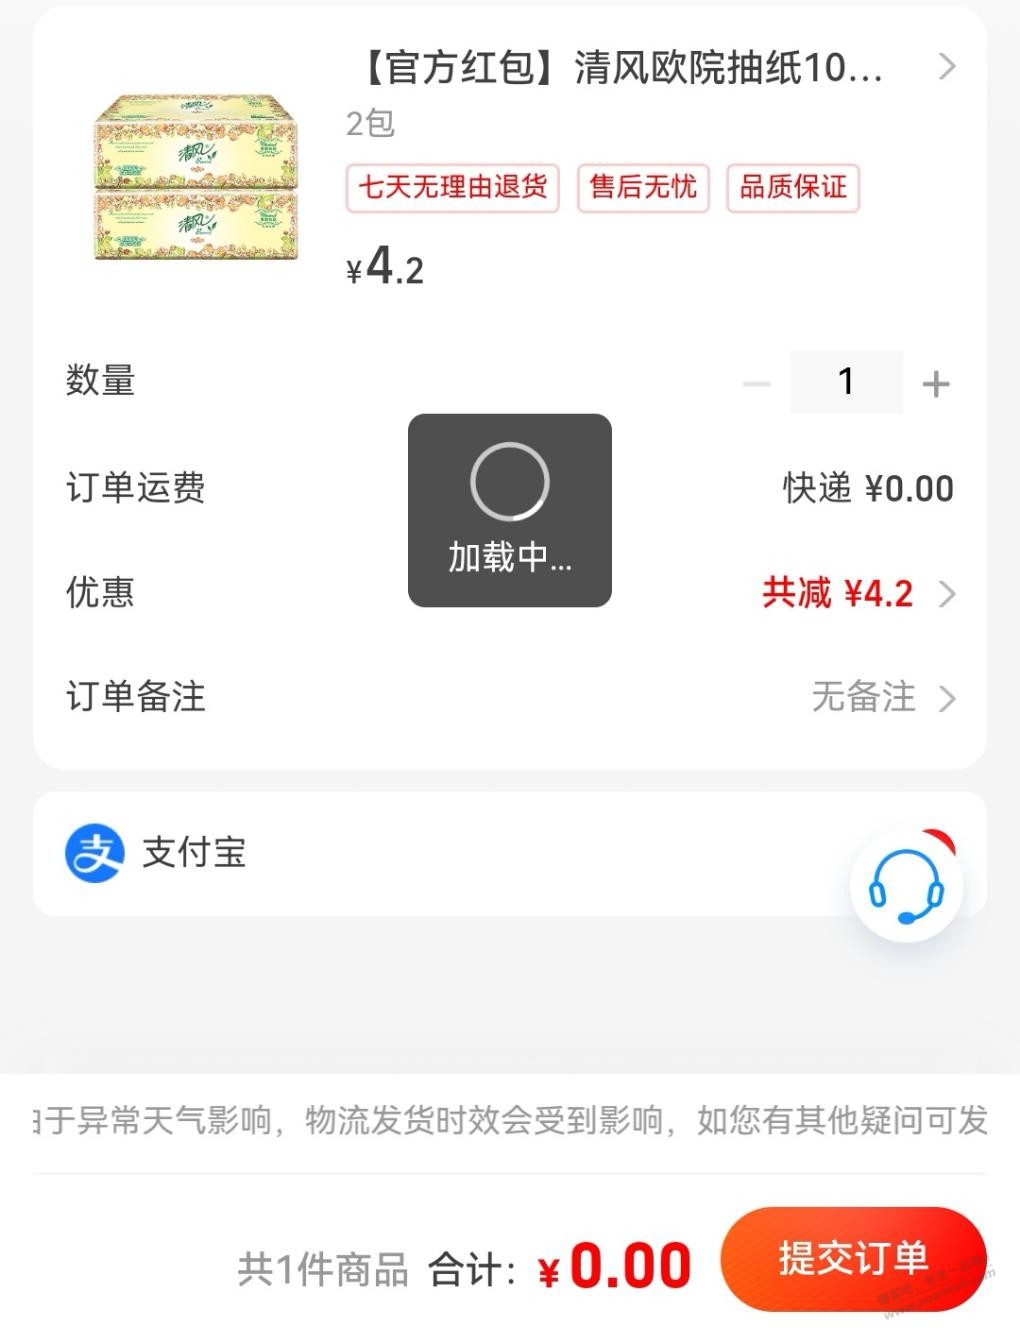 免费2包清风纸巾-惠小助(52huixz.com)